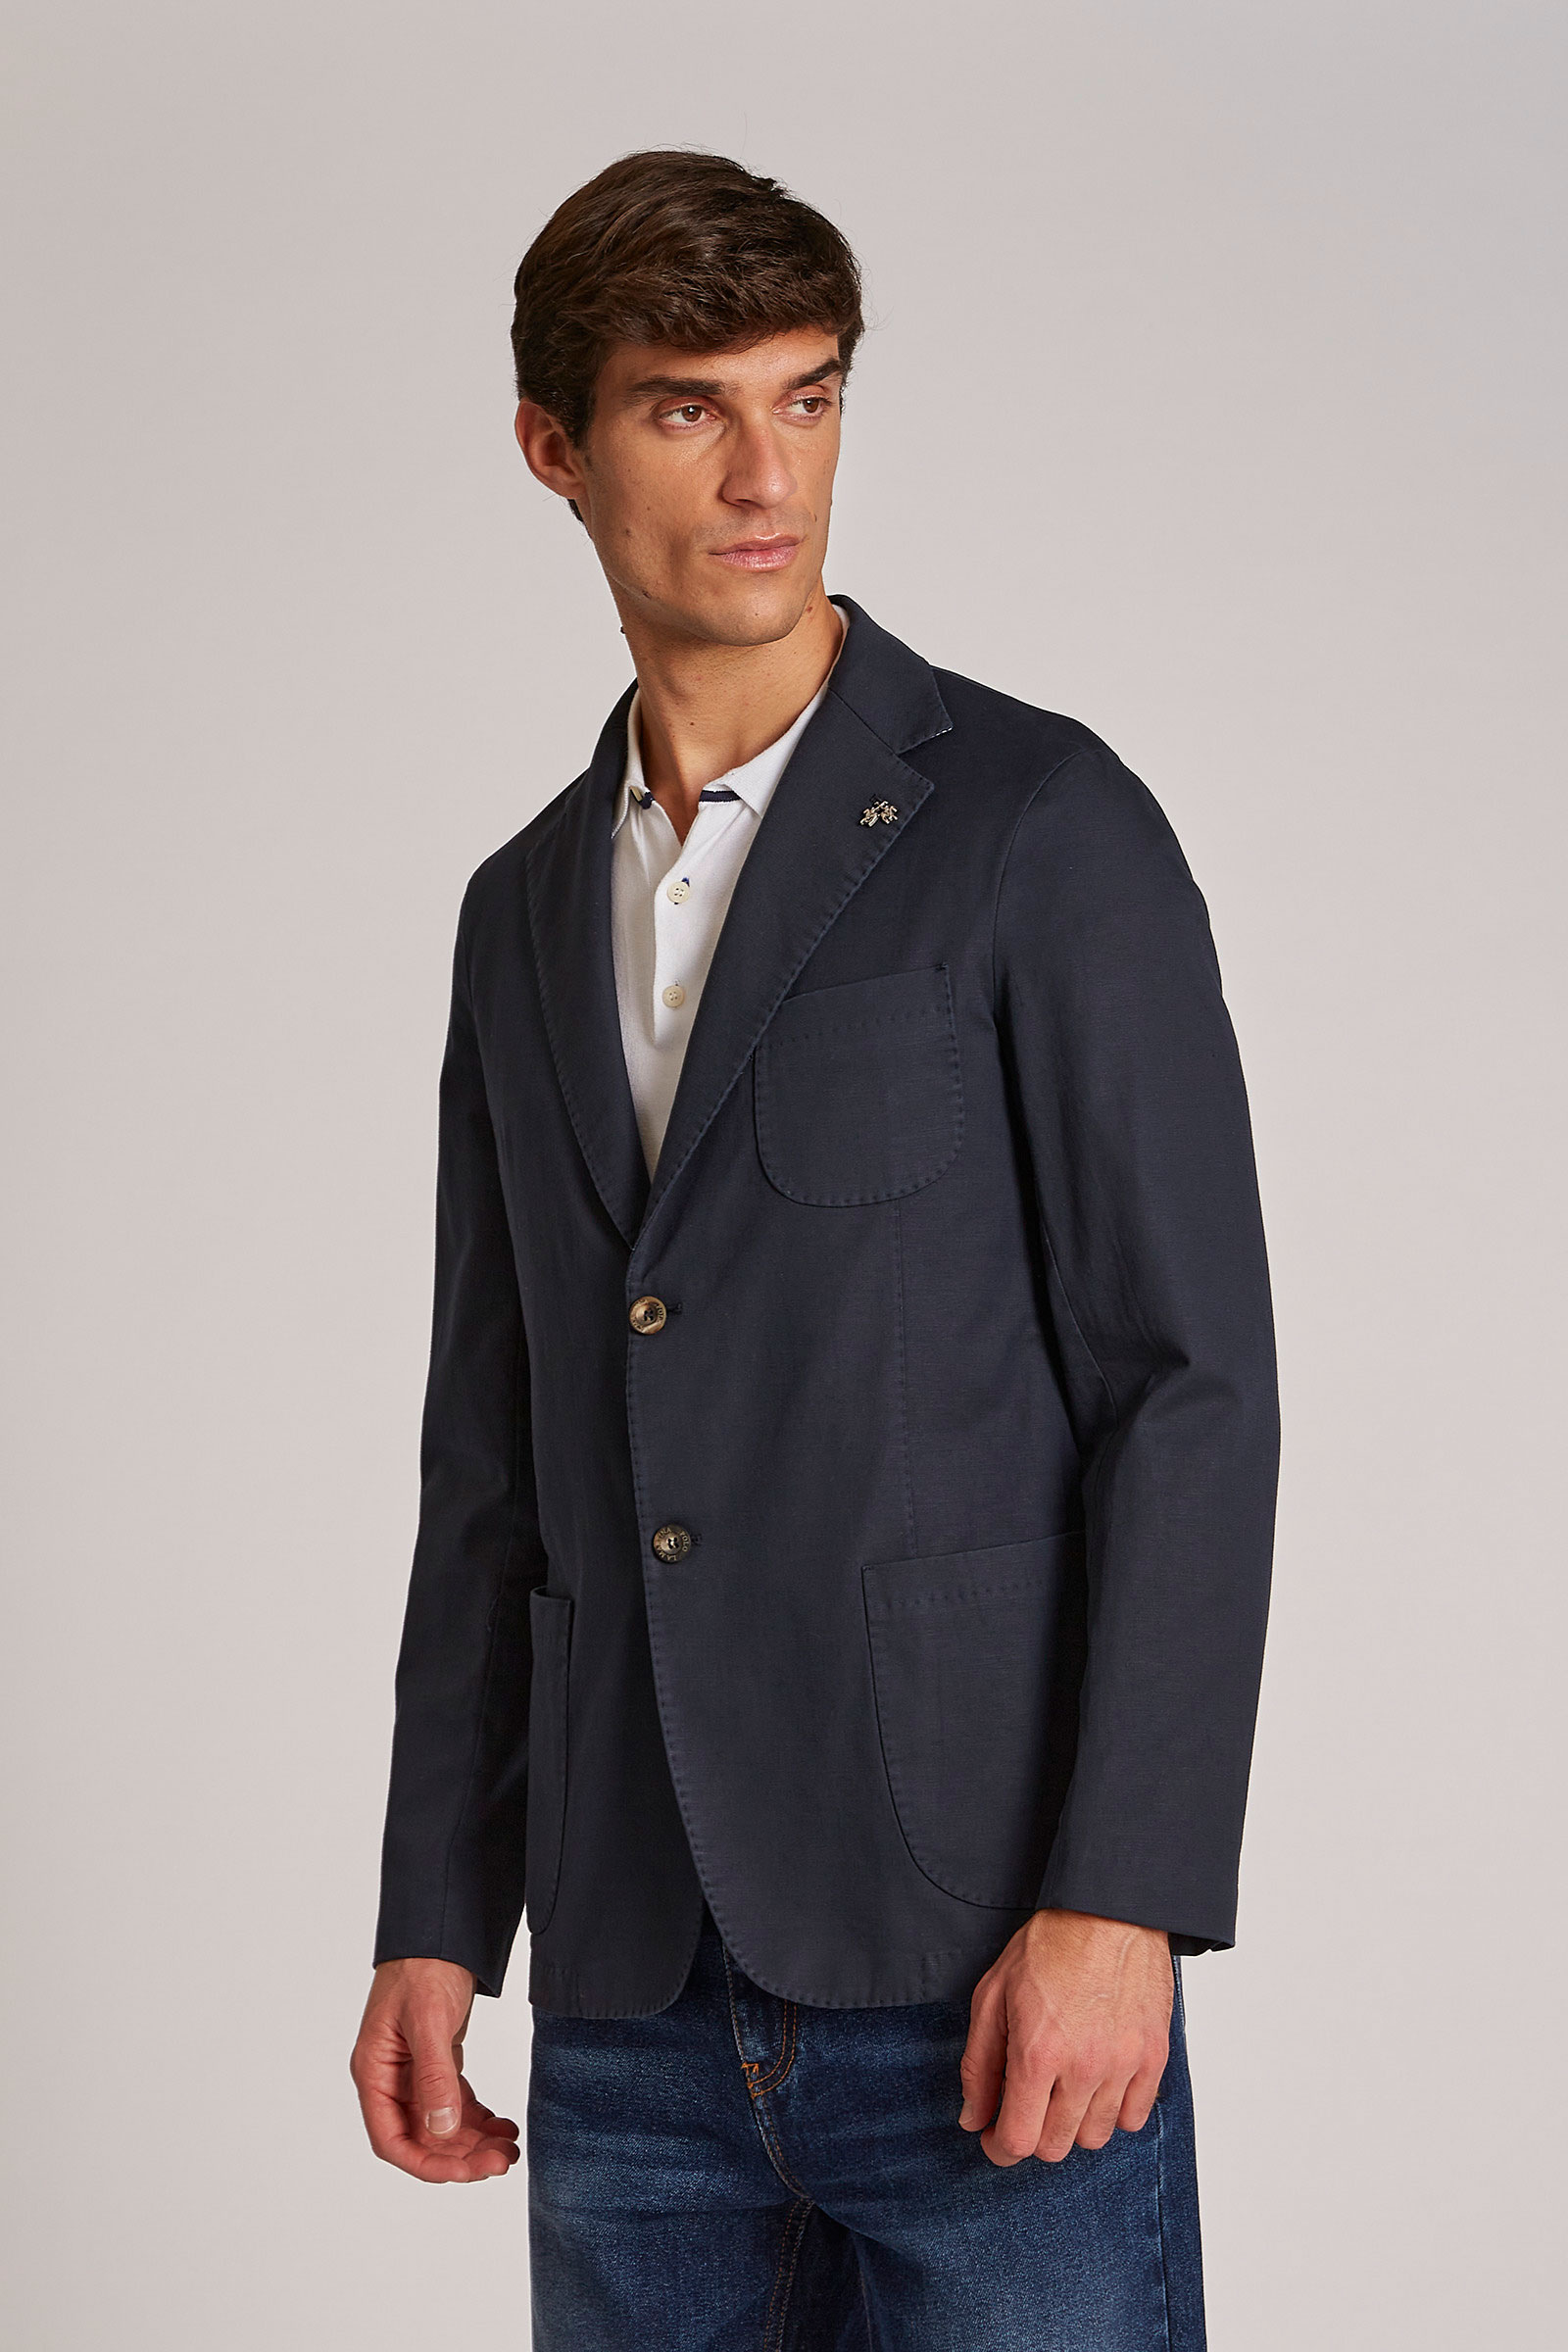 Khaki Cotton Sport Coat | Sport coat outfit, Business casual men, Tan  sports coat outfit men